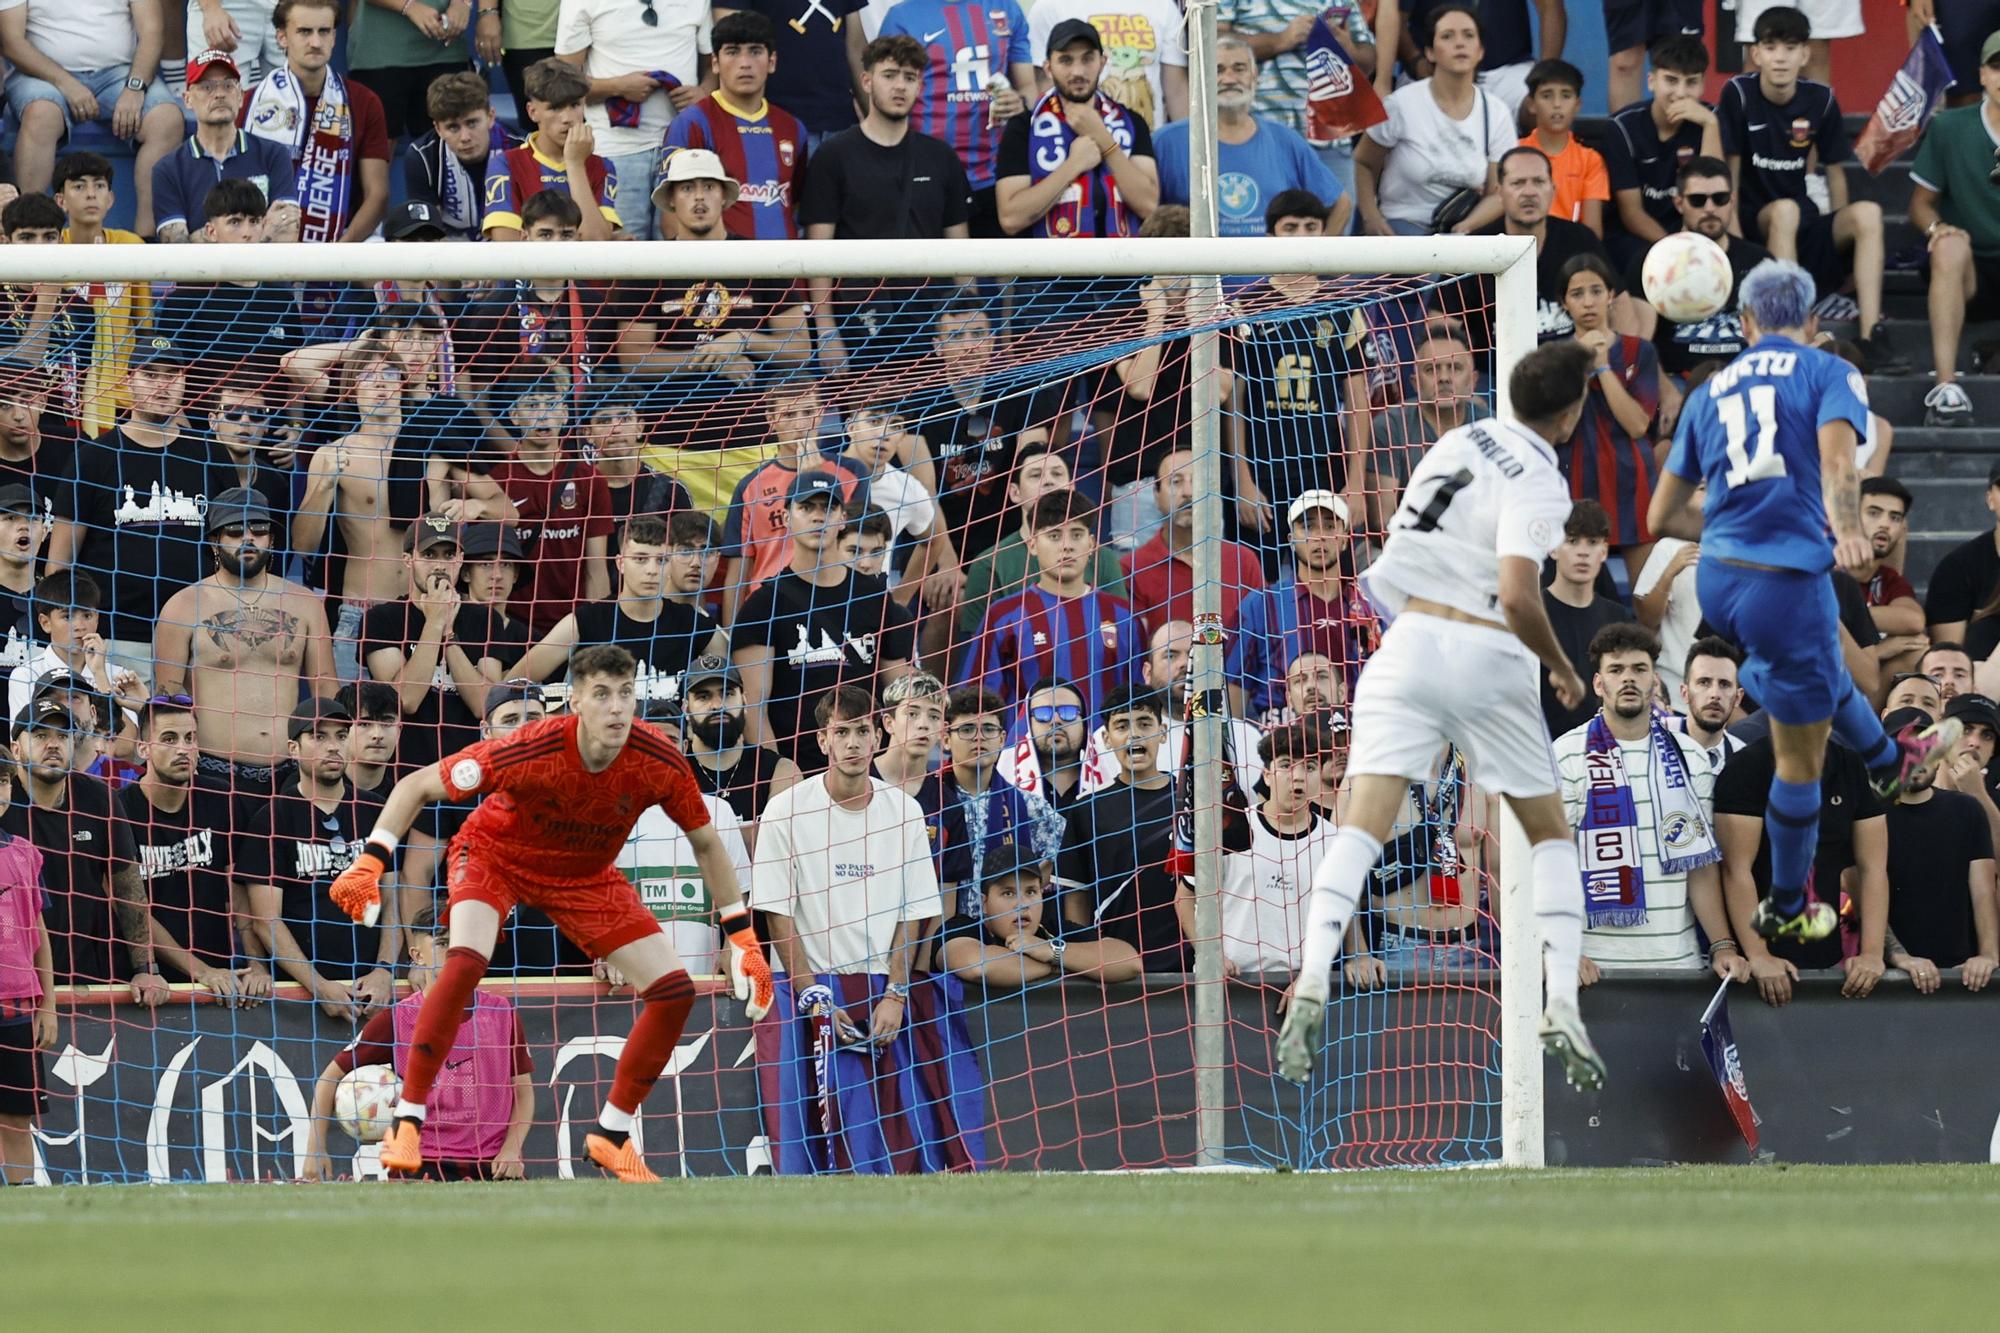 CD Eldense - Real Madrid Castilla: Las mejores imágenes